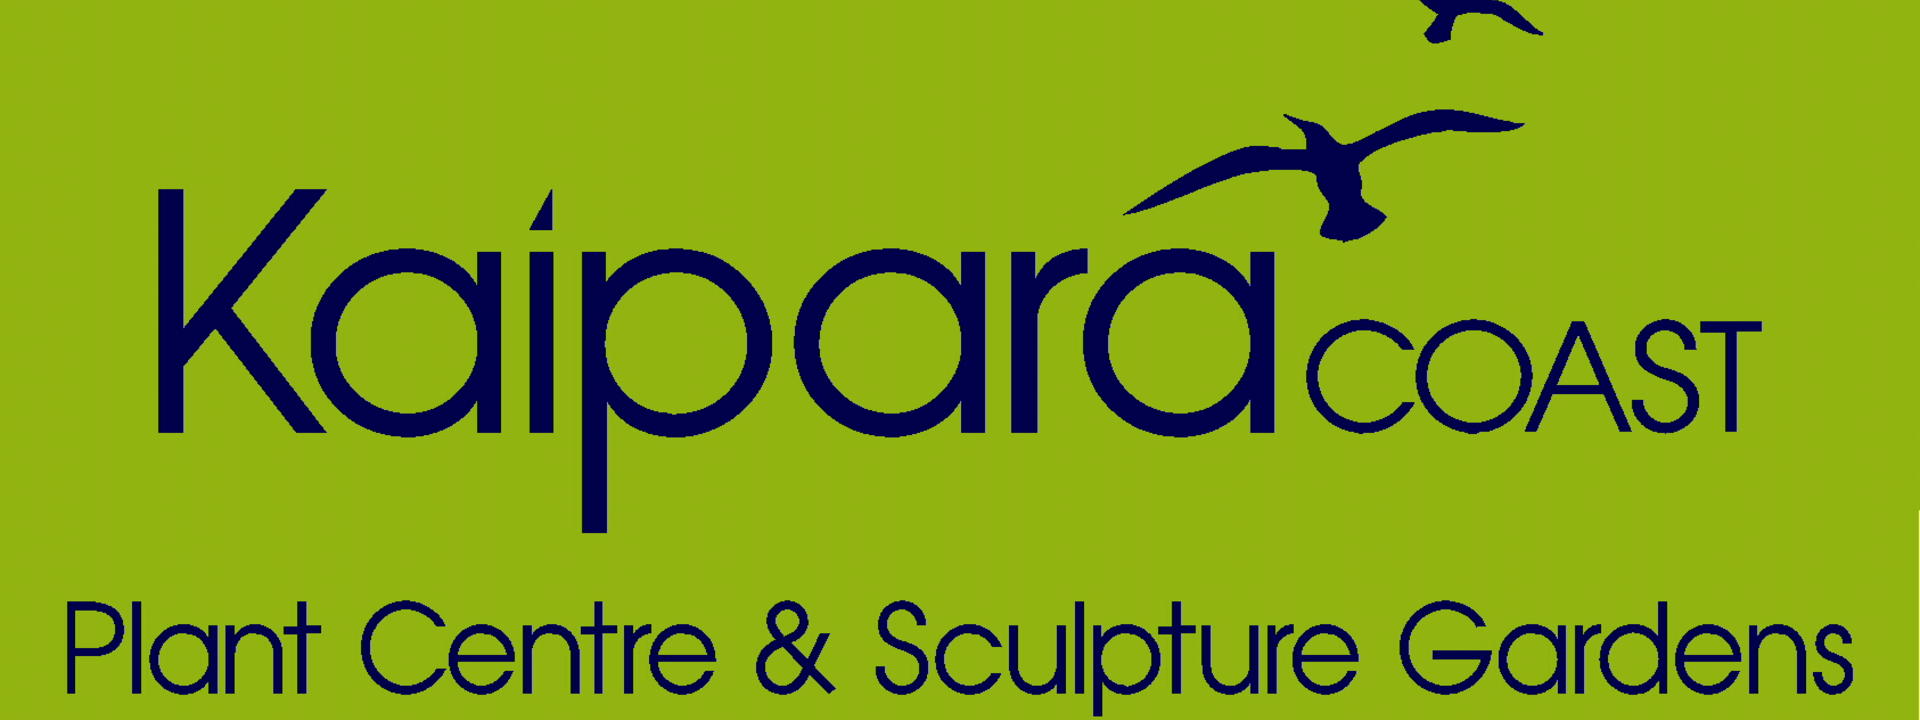 kaipara coast plant centre and sculpture gardens logo